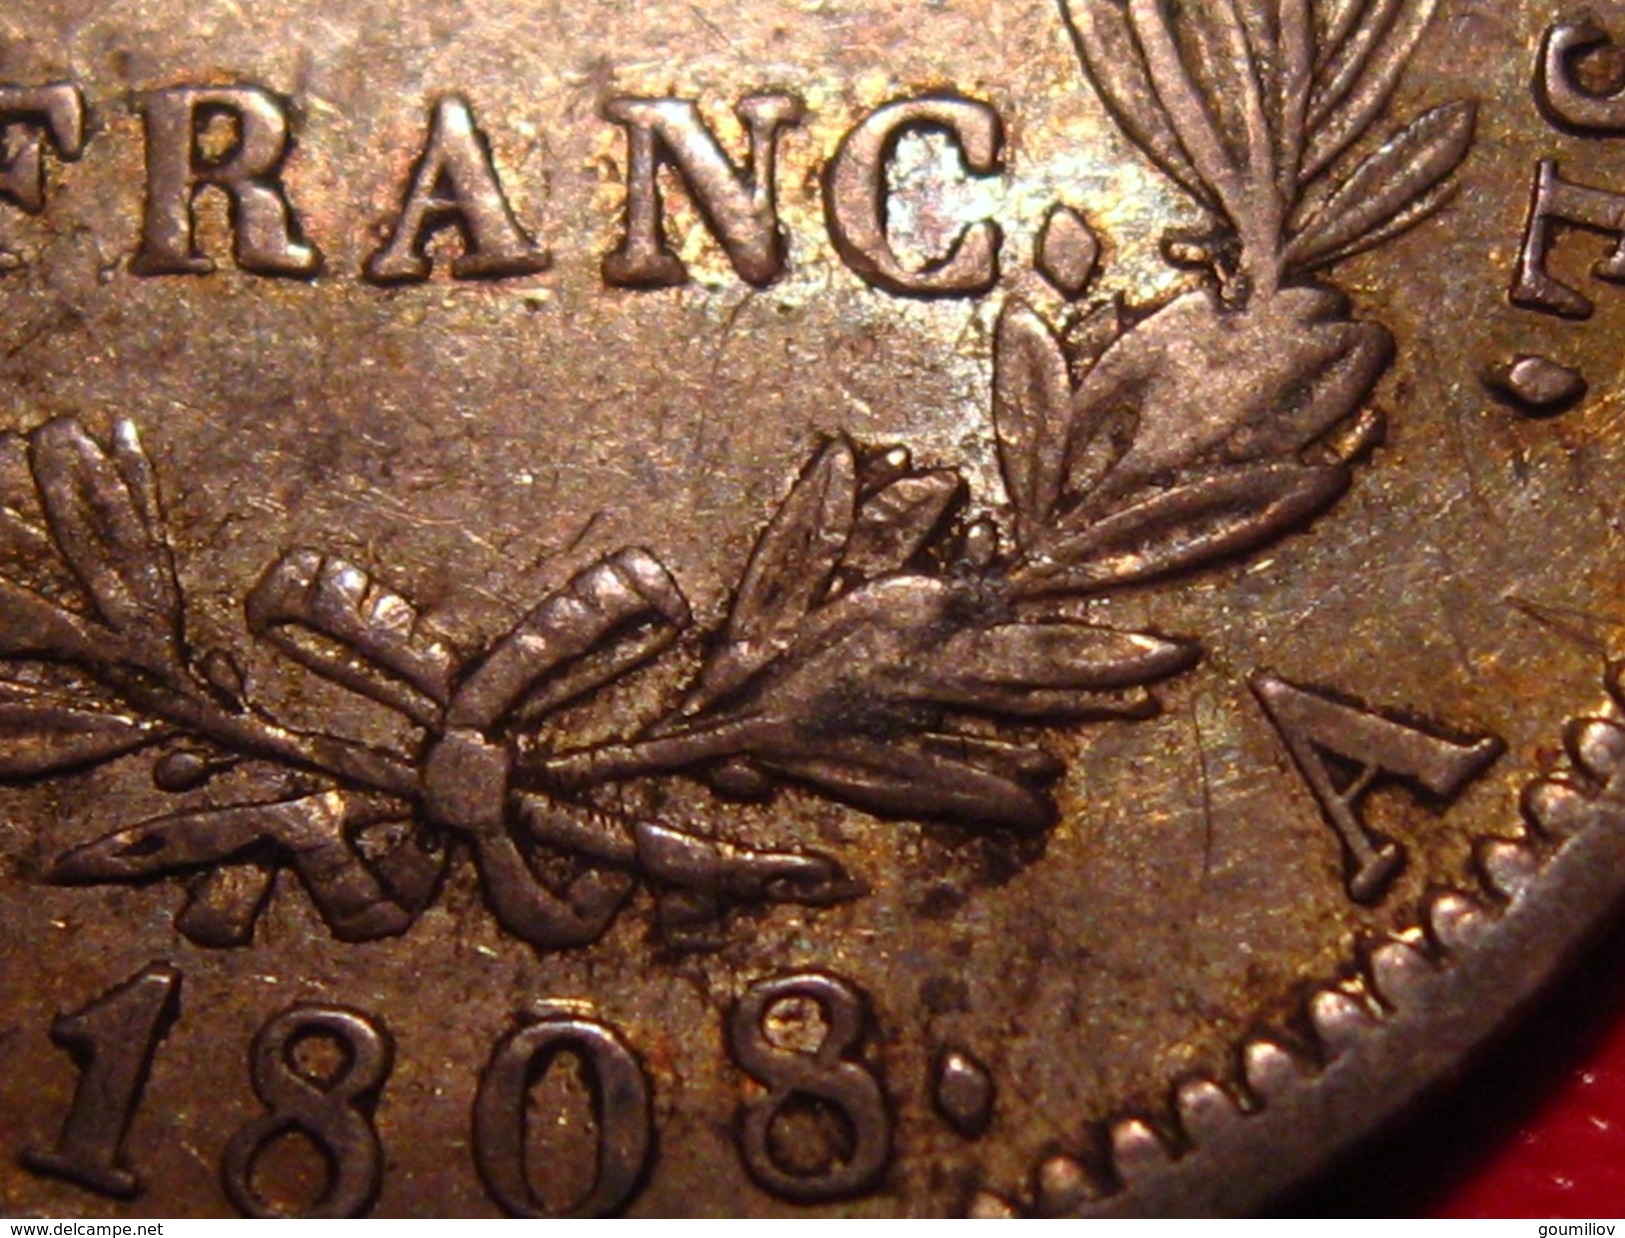 France - 1 franc 1808 A Paris Napoléon Ier - Superbe patine dorée 0193